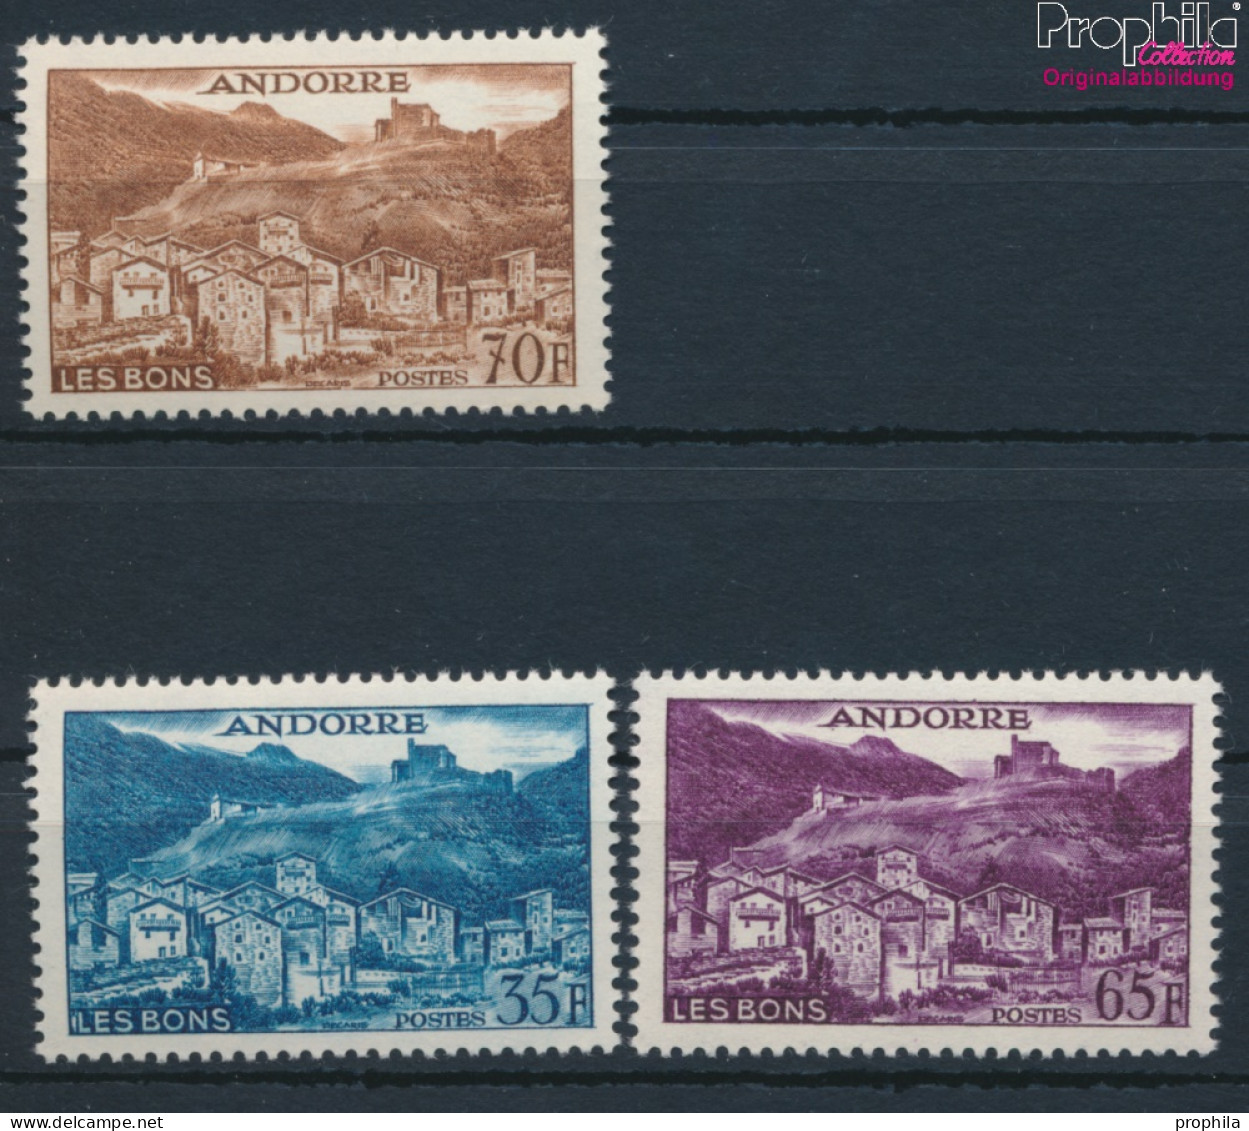 Andorra - Französische Post 161-163 (kompl.Ausg.) Postfrisch 1957 Landschaften (10285460 - Unused Stamps